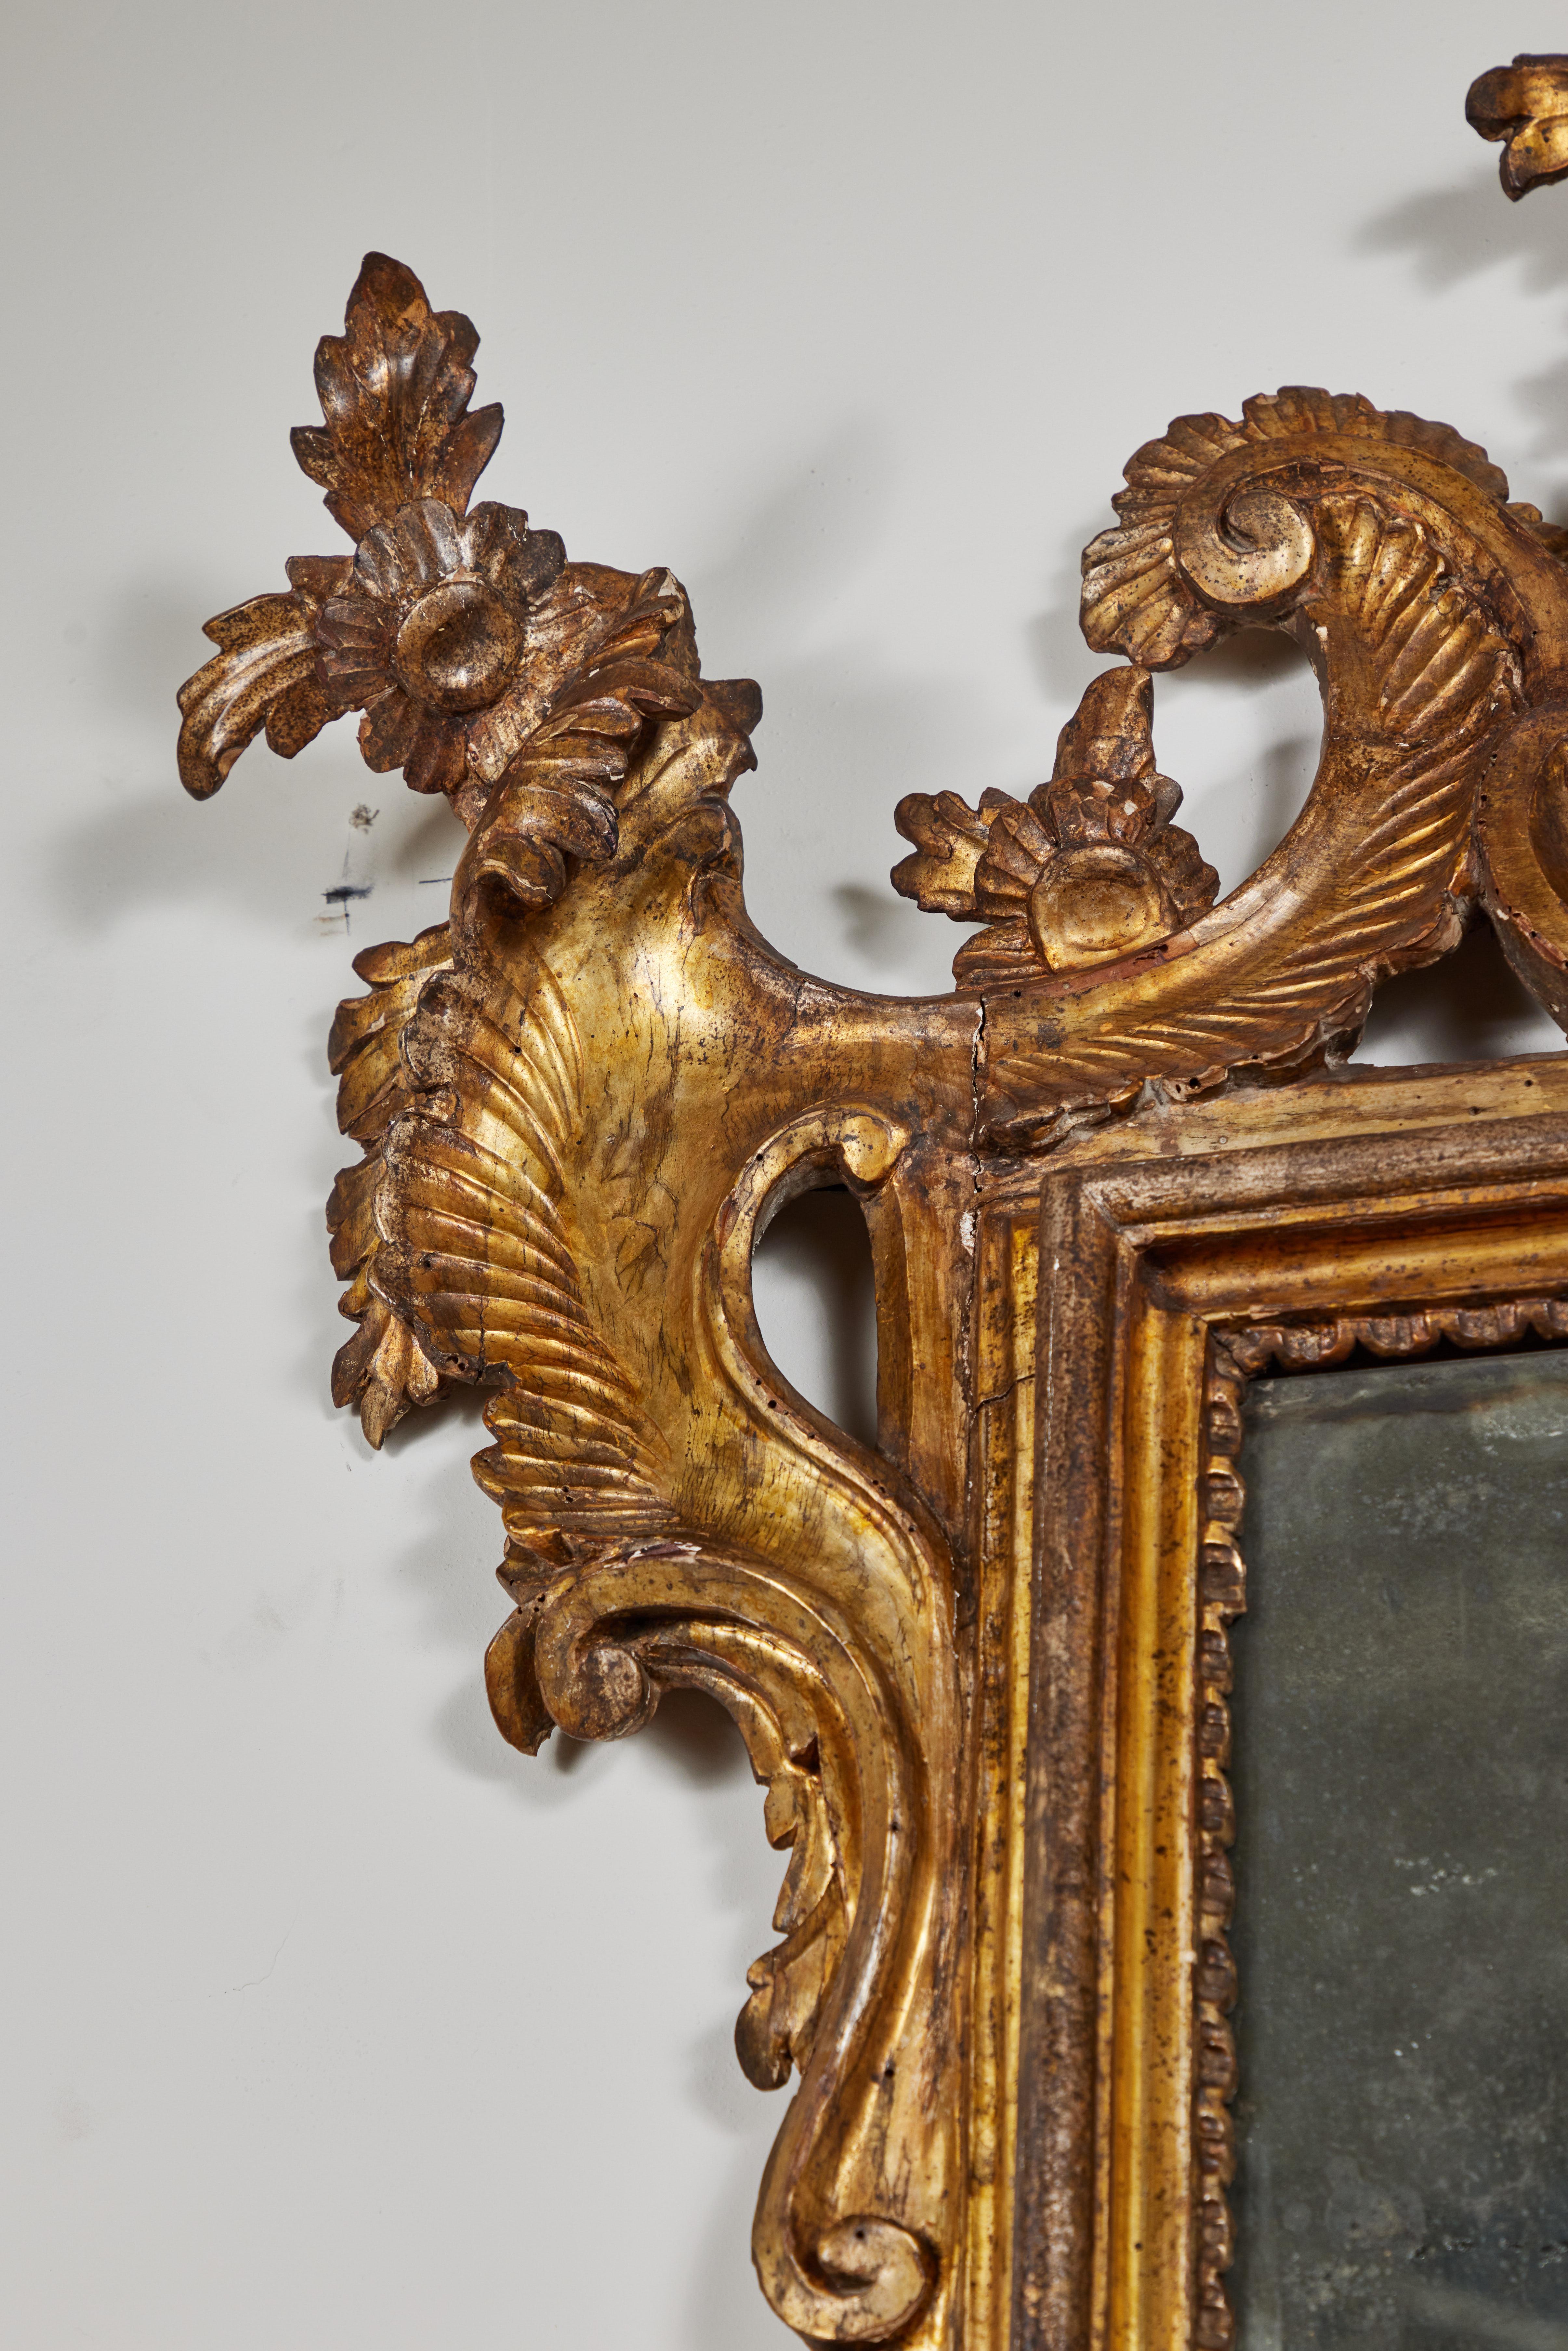 Wunderschön handgeschnitzter, vergoldeter und mit 22k vergoldeter Spiegel aus der Zeit um 1760 mit zwei originalen Quecksilberglasscheiben. Das Ganze ist mit reliefartig geschnitzten Schnörkeln verziert und wird von einer beeindruckenden Krone mit